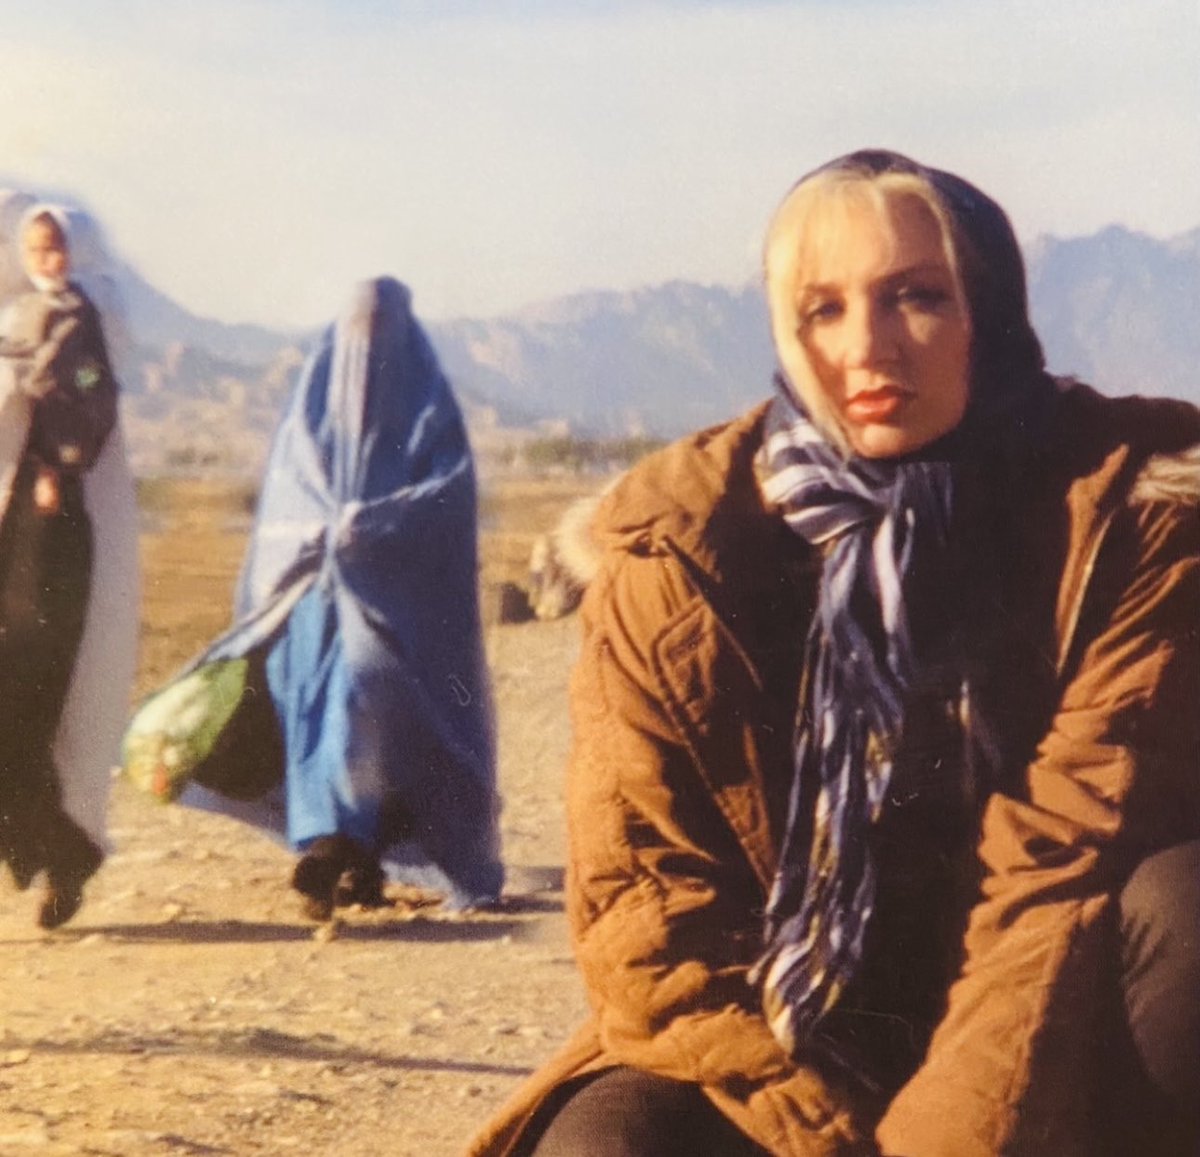 En Afganistán🇦🇫(bajo el régimen talibán) las mujeres tienen prohibido trabajar y estudiar, salir de casa sin un familiar masculino, practicar deporte. Deben cubrirse de la cabeza a los pies con una burka.🇦🇫es una jaula para las mujeres, víctimas de un apartheid de género. #March8